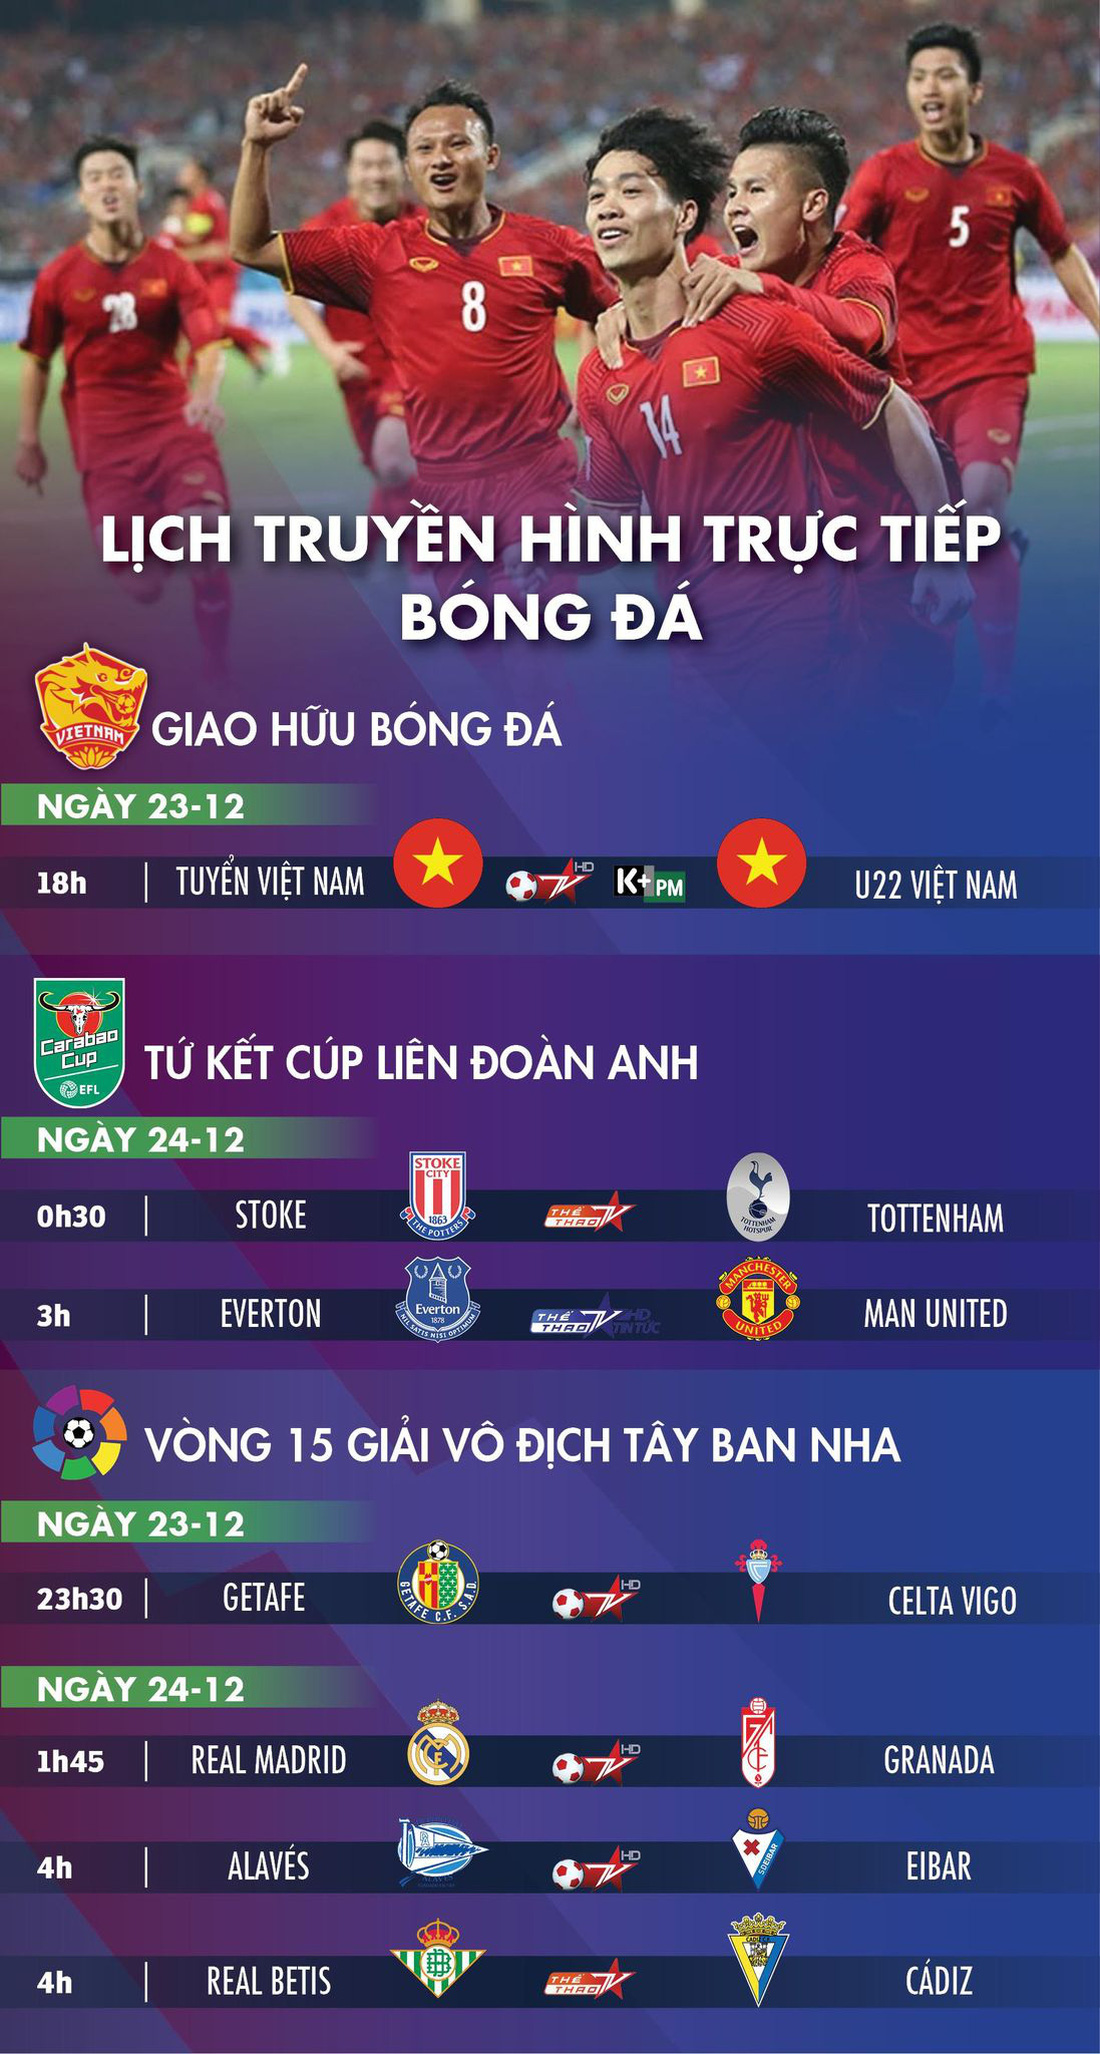 Lịch trực tiếp bóng đá 23-12: U22 Việt Nam - Tuyển Việt Nam, Everton - Man United - Ảnh 1.